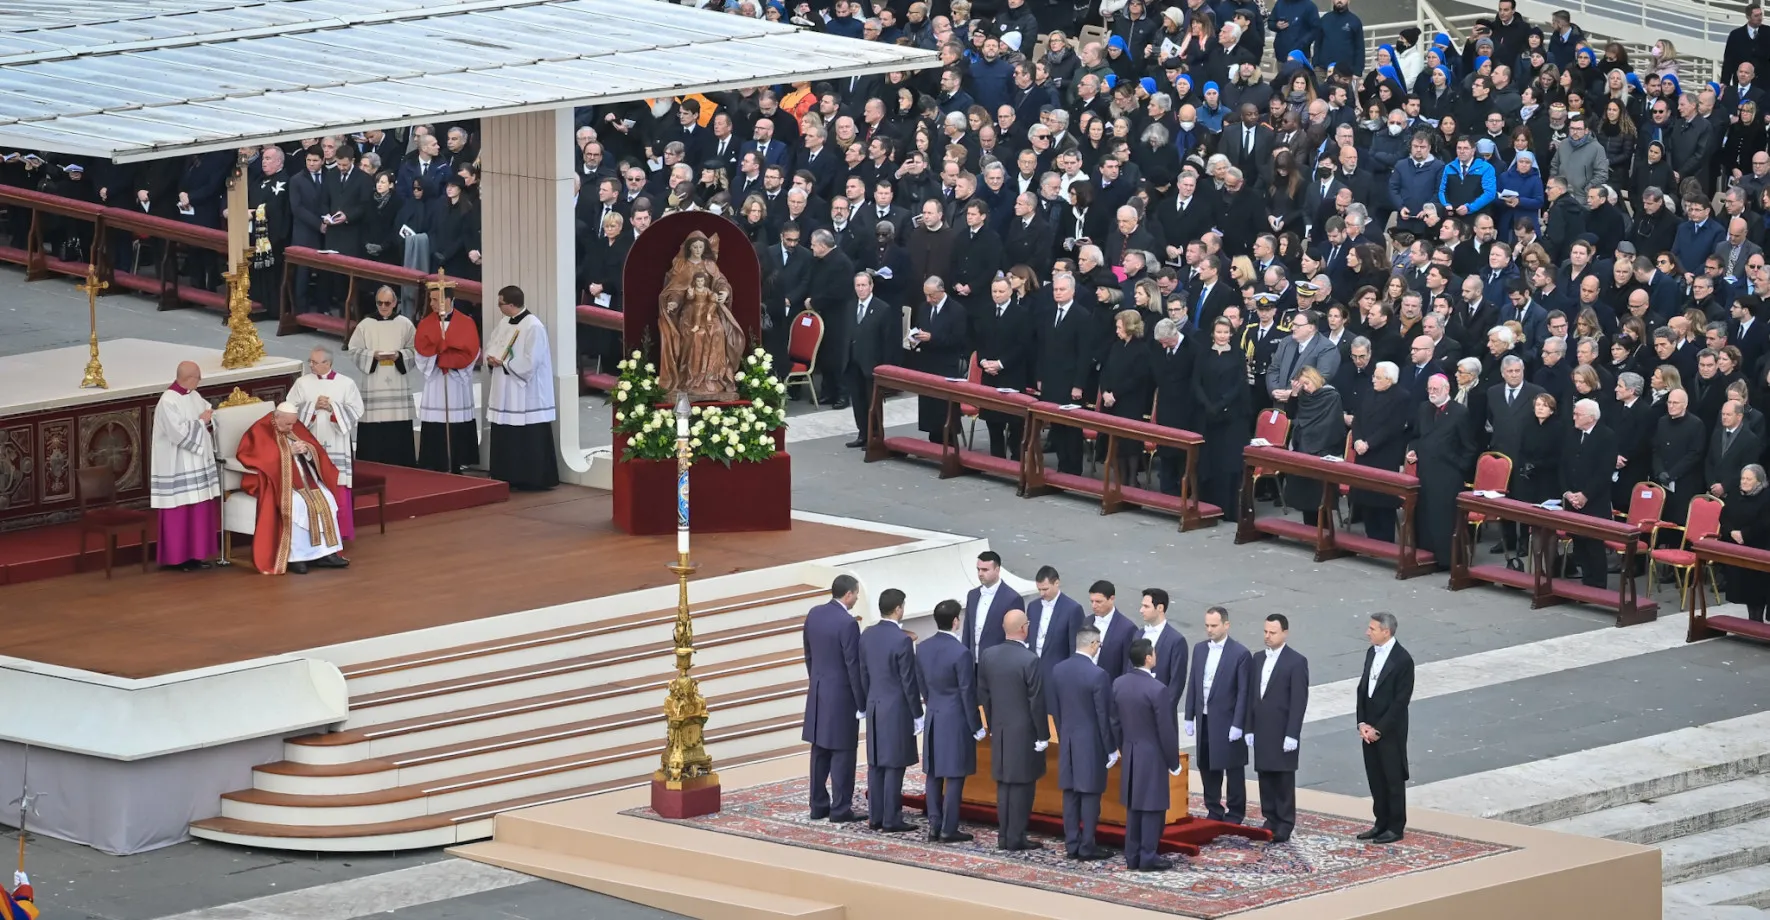 GALERIE: Vatikán se rozloučil s Benediktem XVI. Svatopetrské náměstí zaplnilo 100 000 lidí